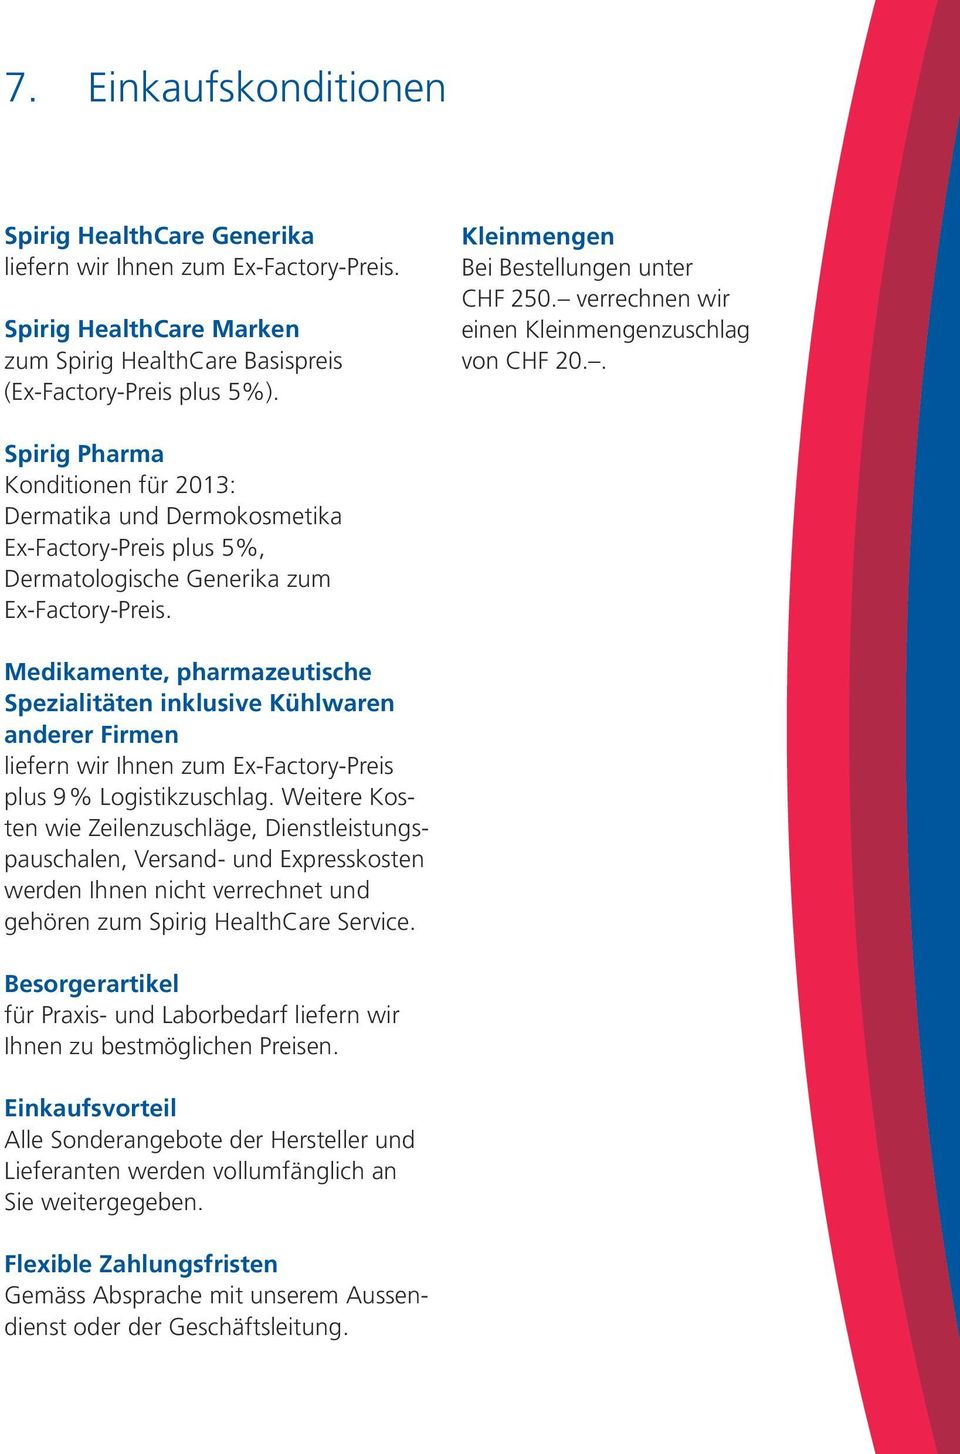 . Spirig Pharma Konditionen für 2013: Dermatika und Dermokosmetika Ex-Factory-Preis plus 5%, Dermatologische Generika zum Ex-Factory-Preis.